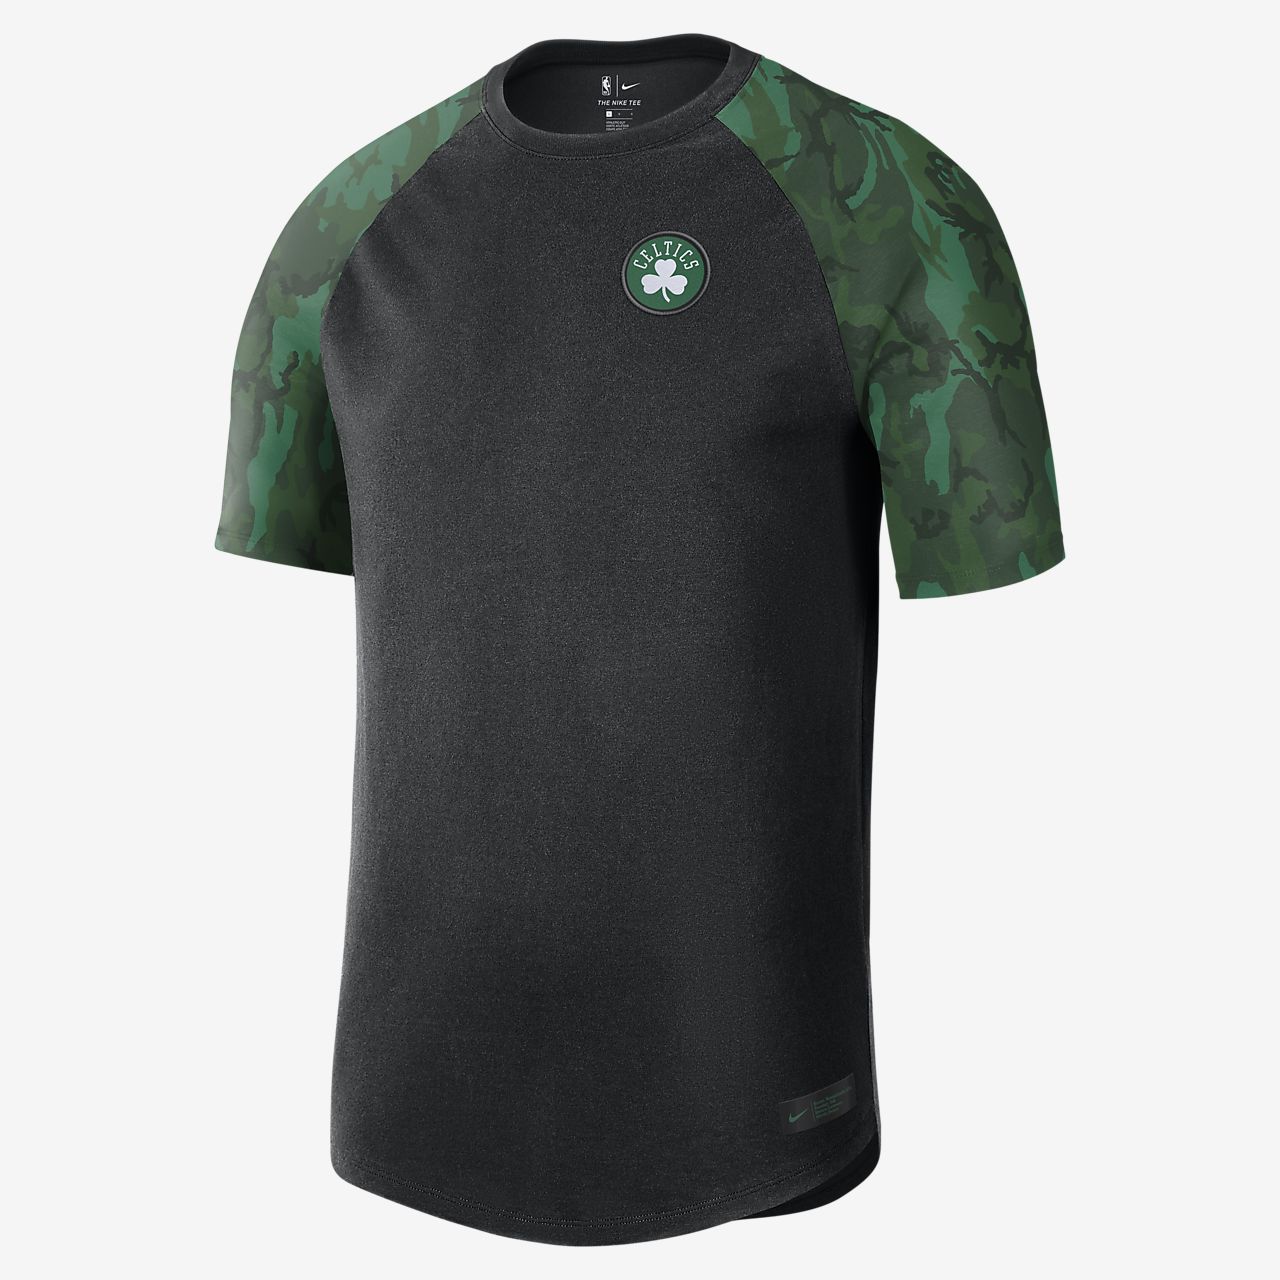 Boston Celtics Nike Men's NBA T-Shirt 